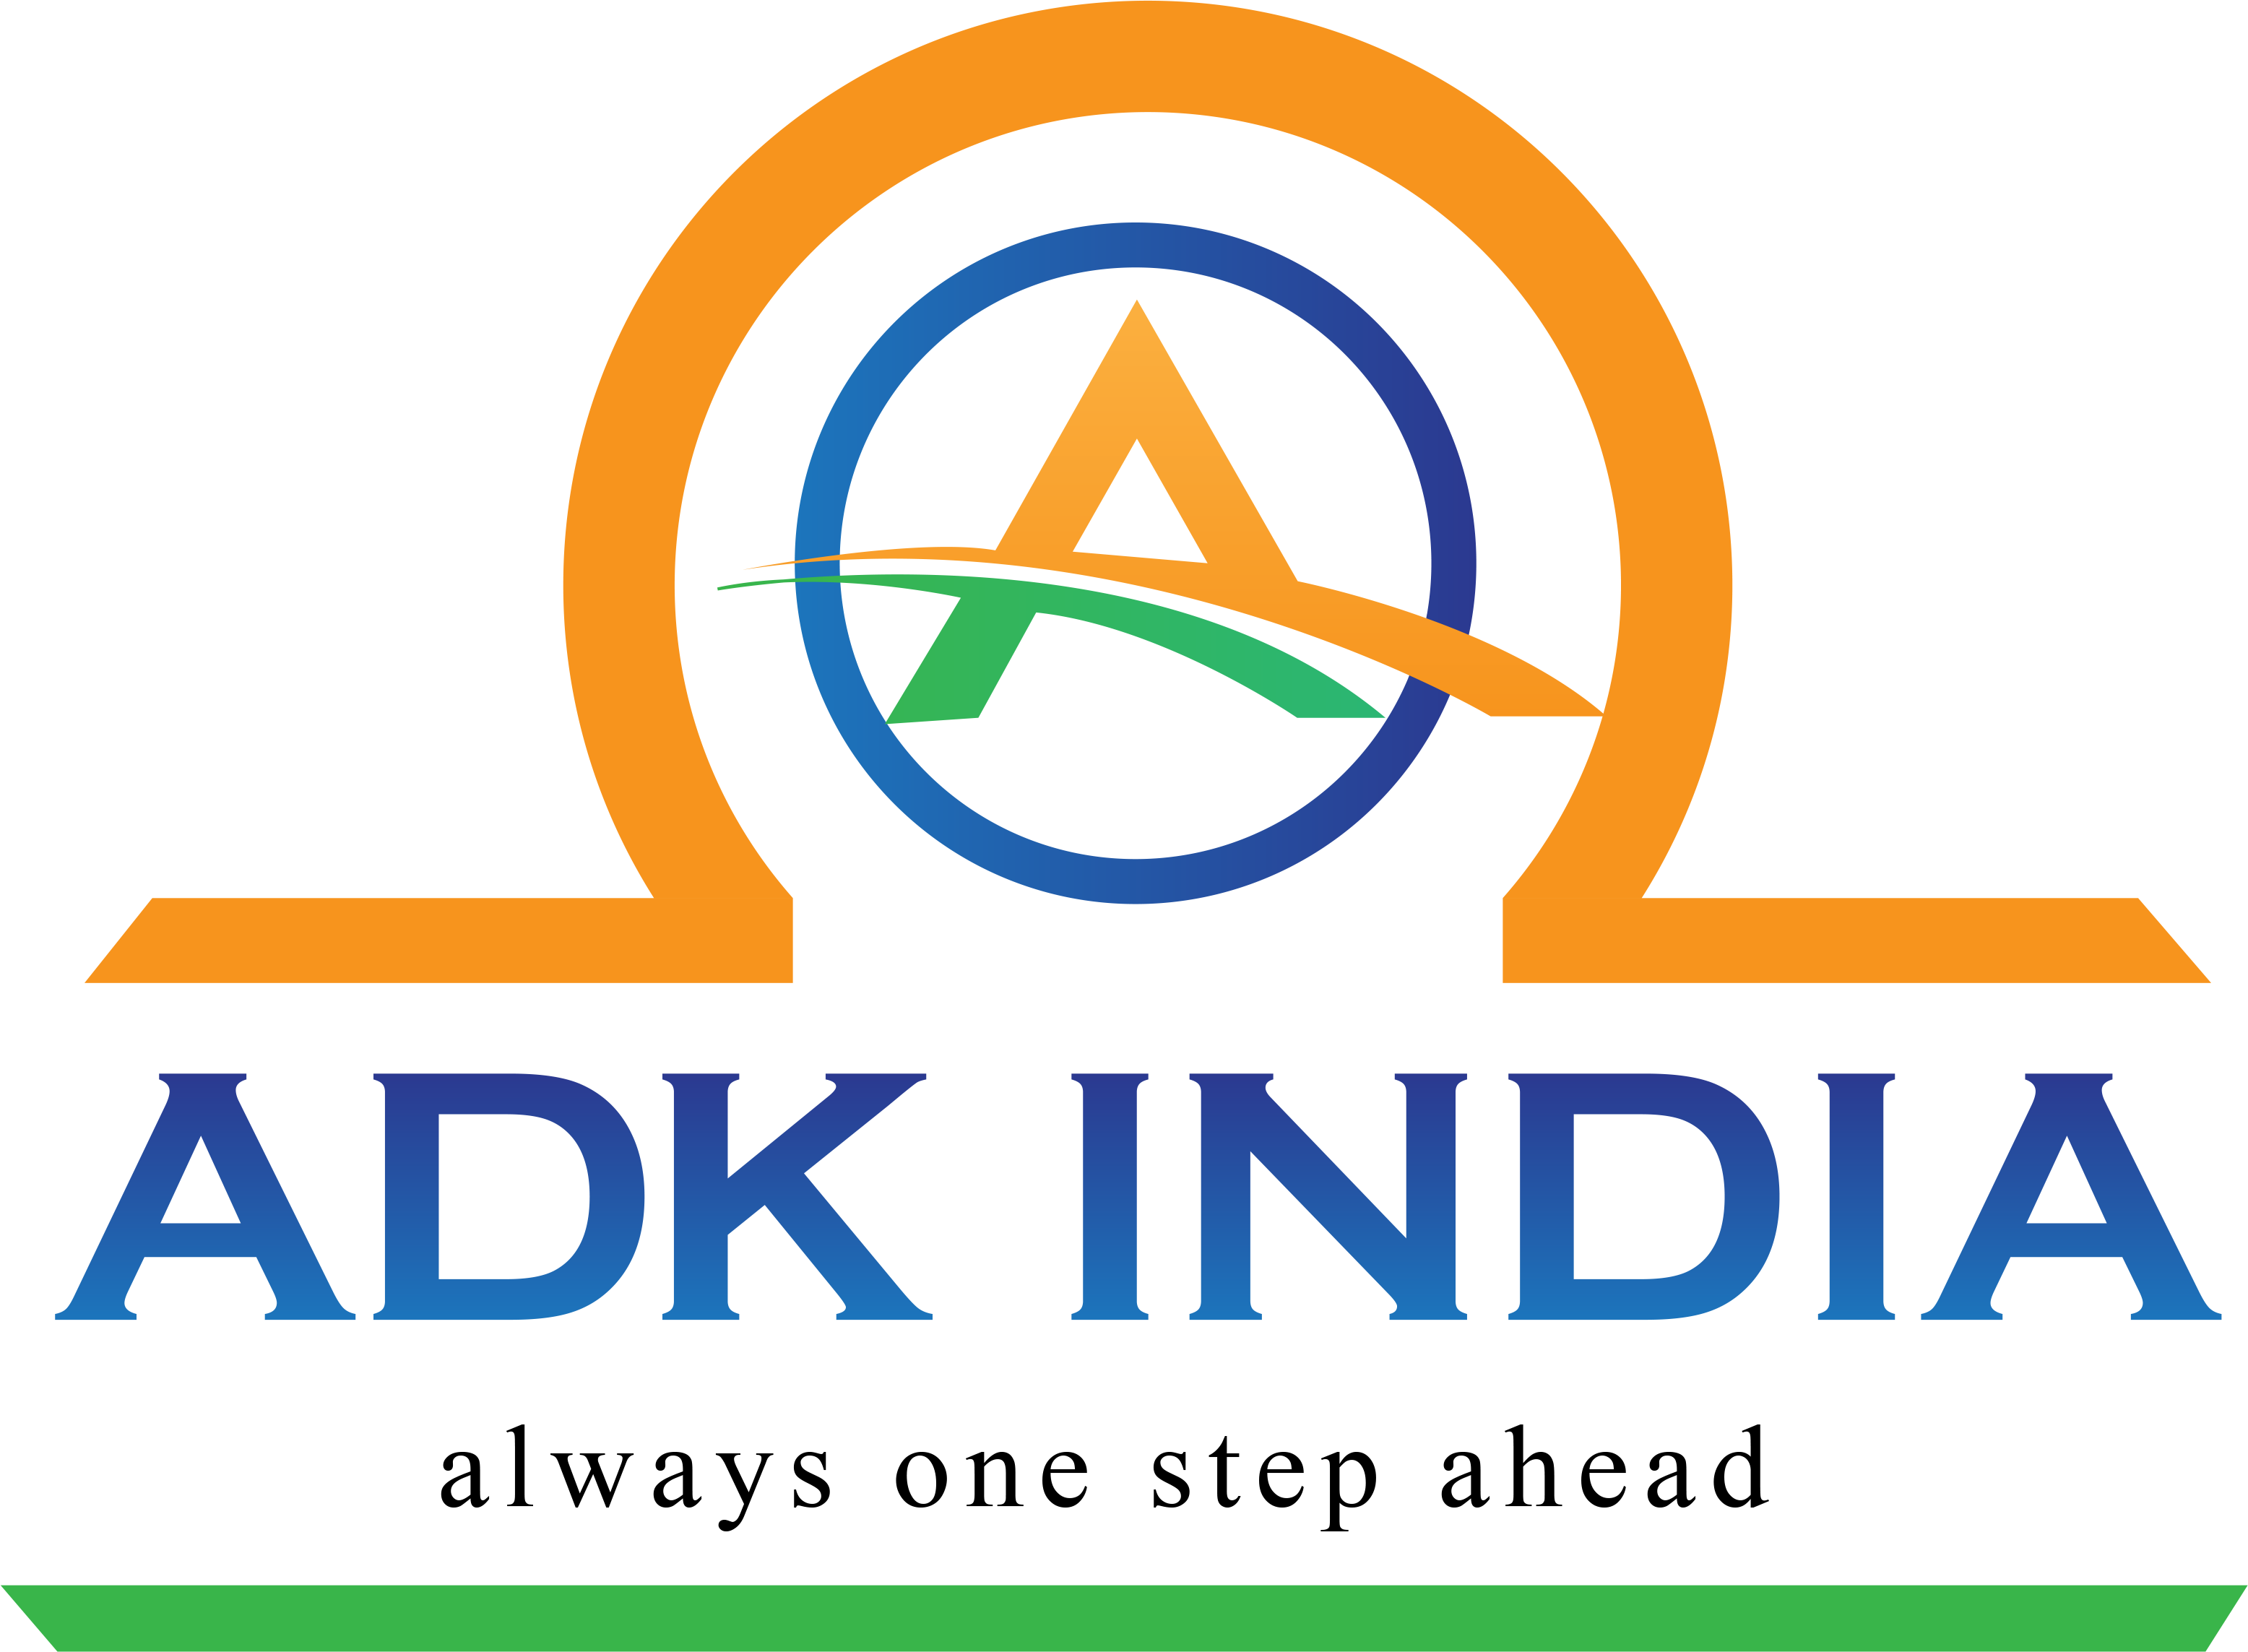 ADK India Axepert Exhibits Pvt Ltd